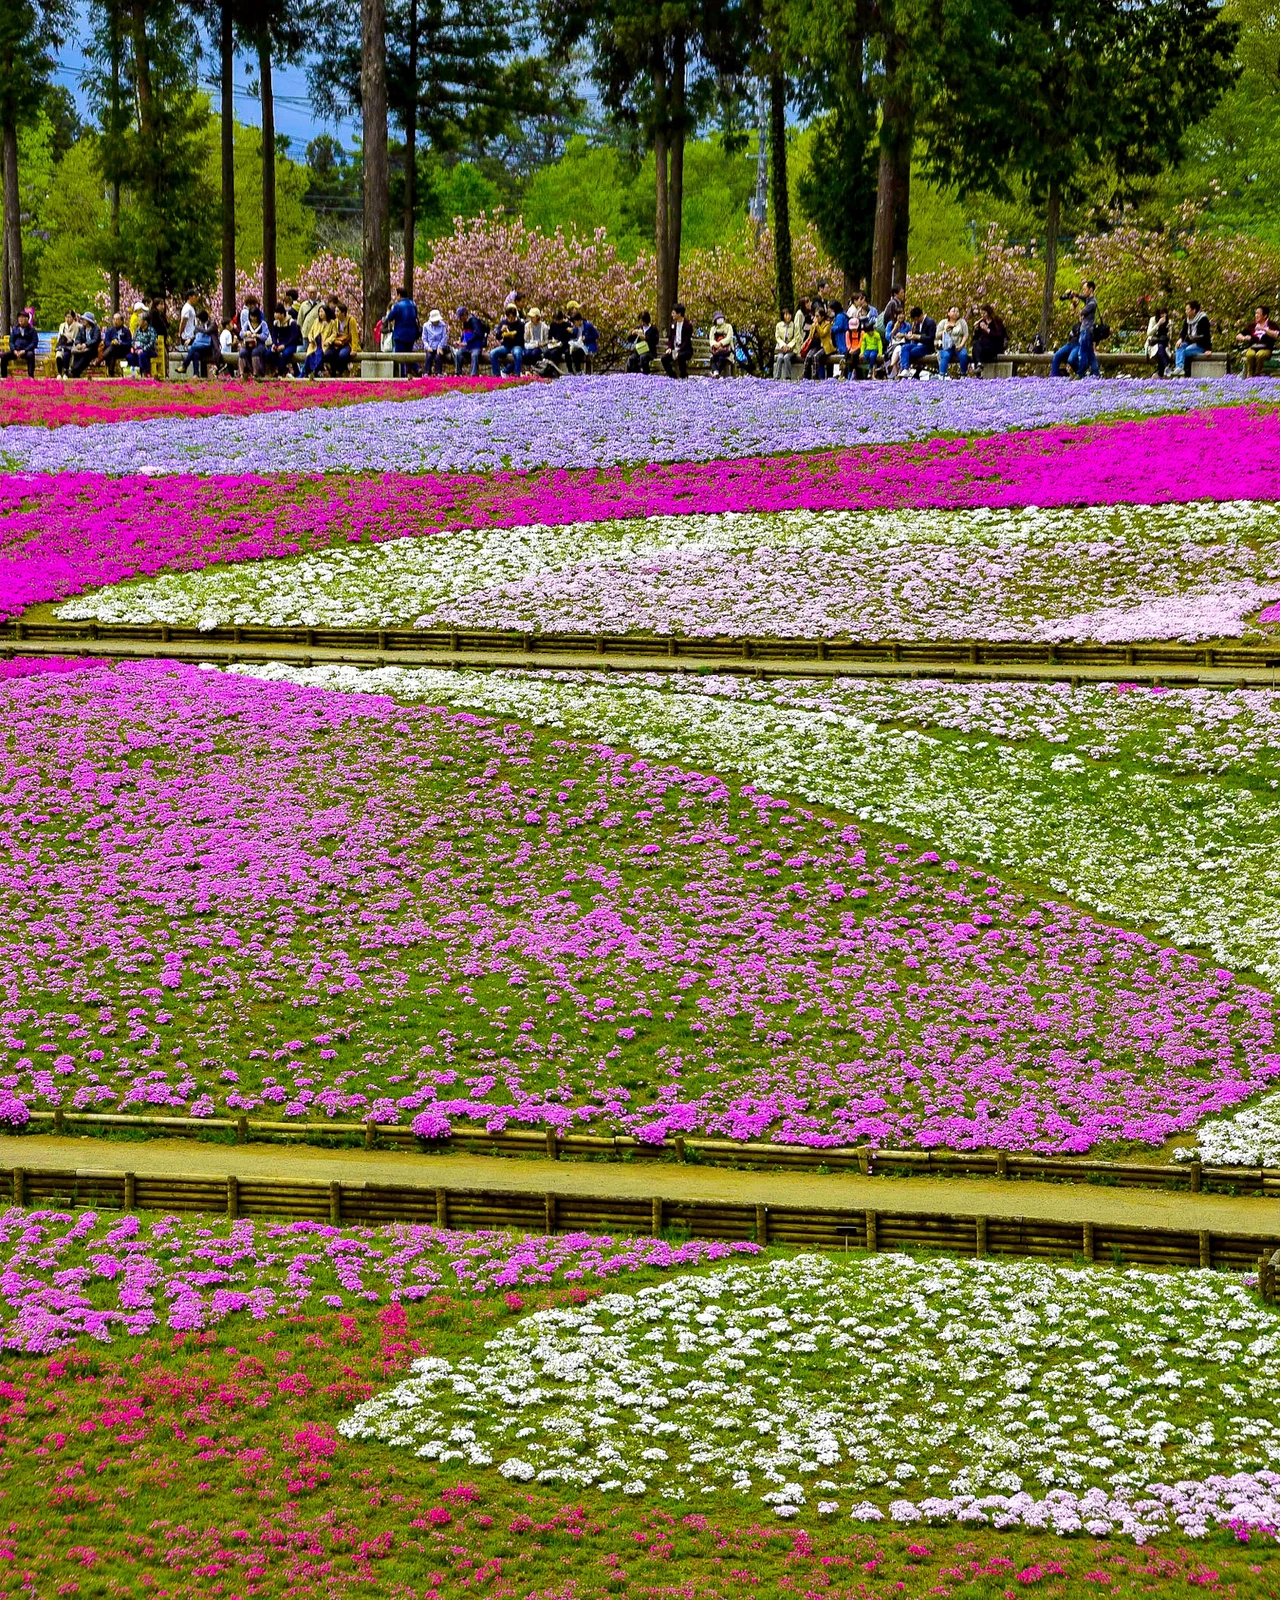 カラフルな芝桜の絨毯が美しい 埼玉県 羊山公園 Jptravelerspicが投稿したフォトブック Lemon8